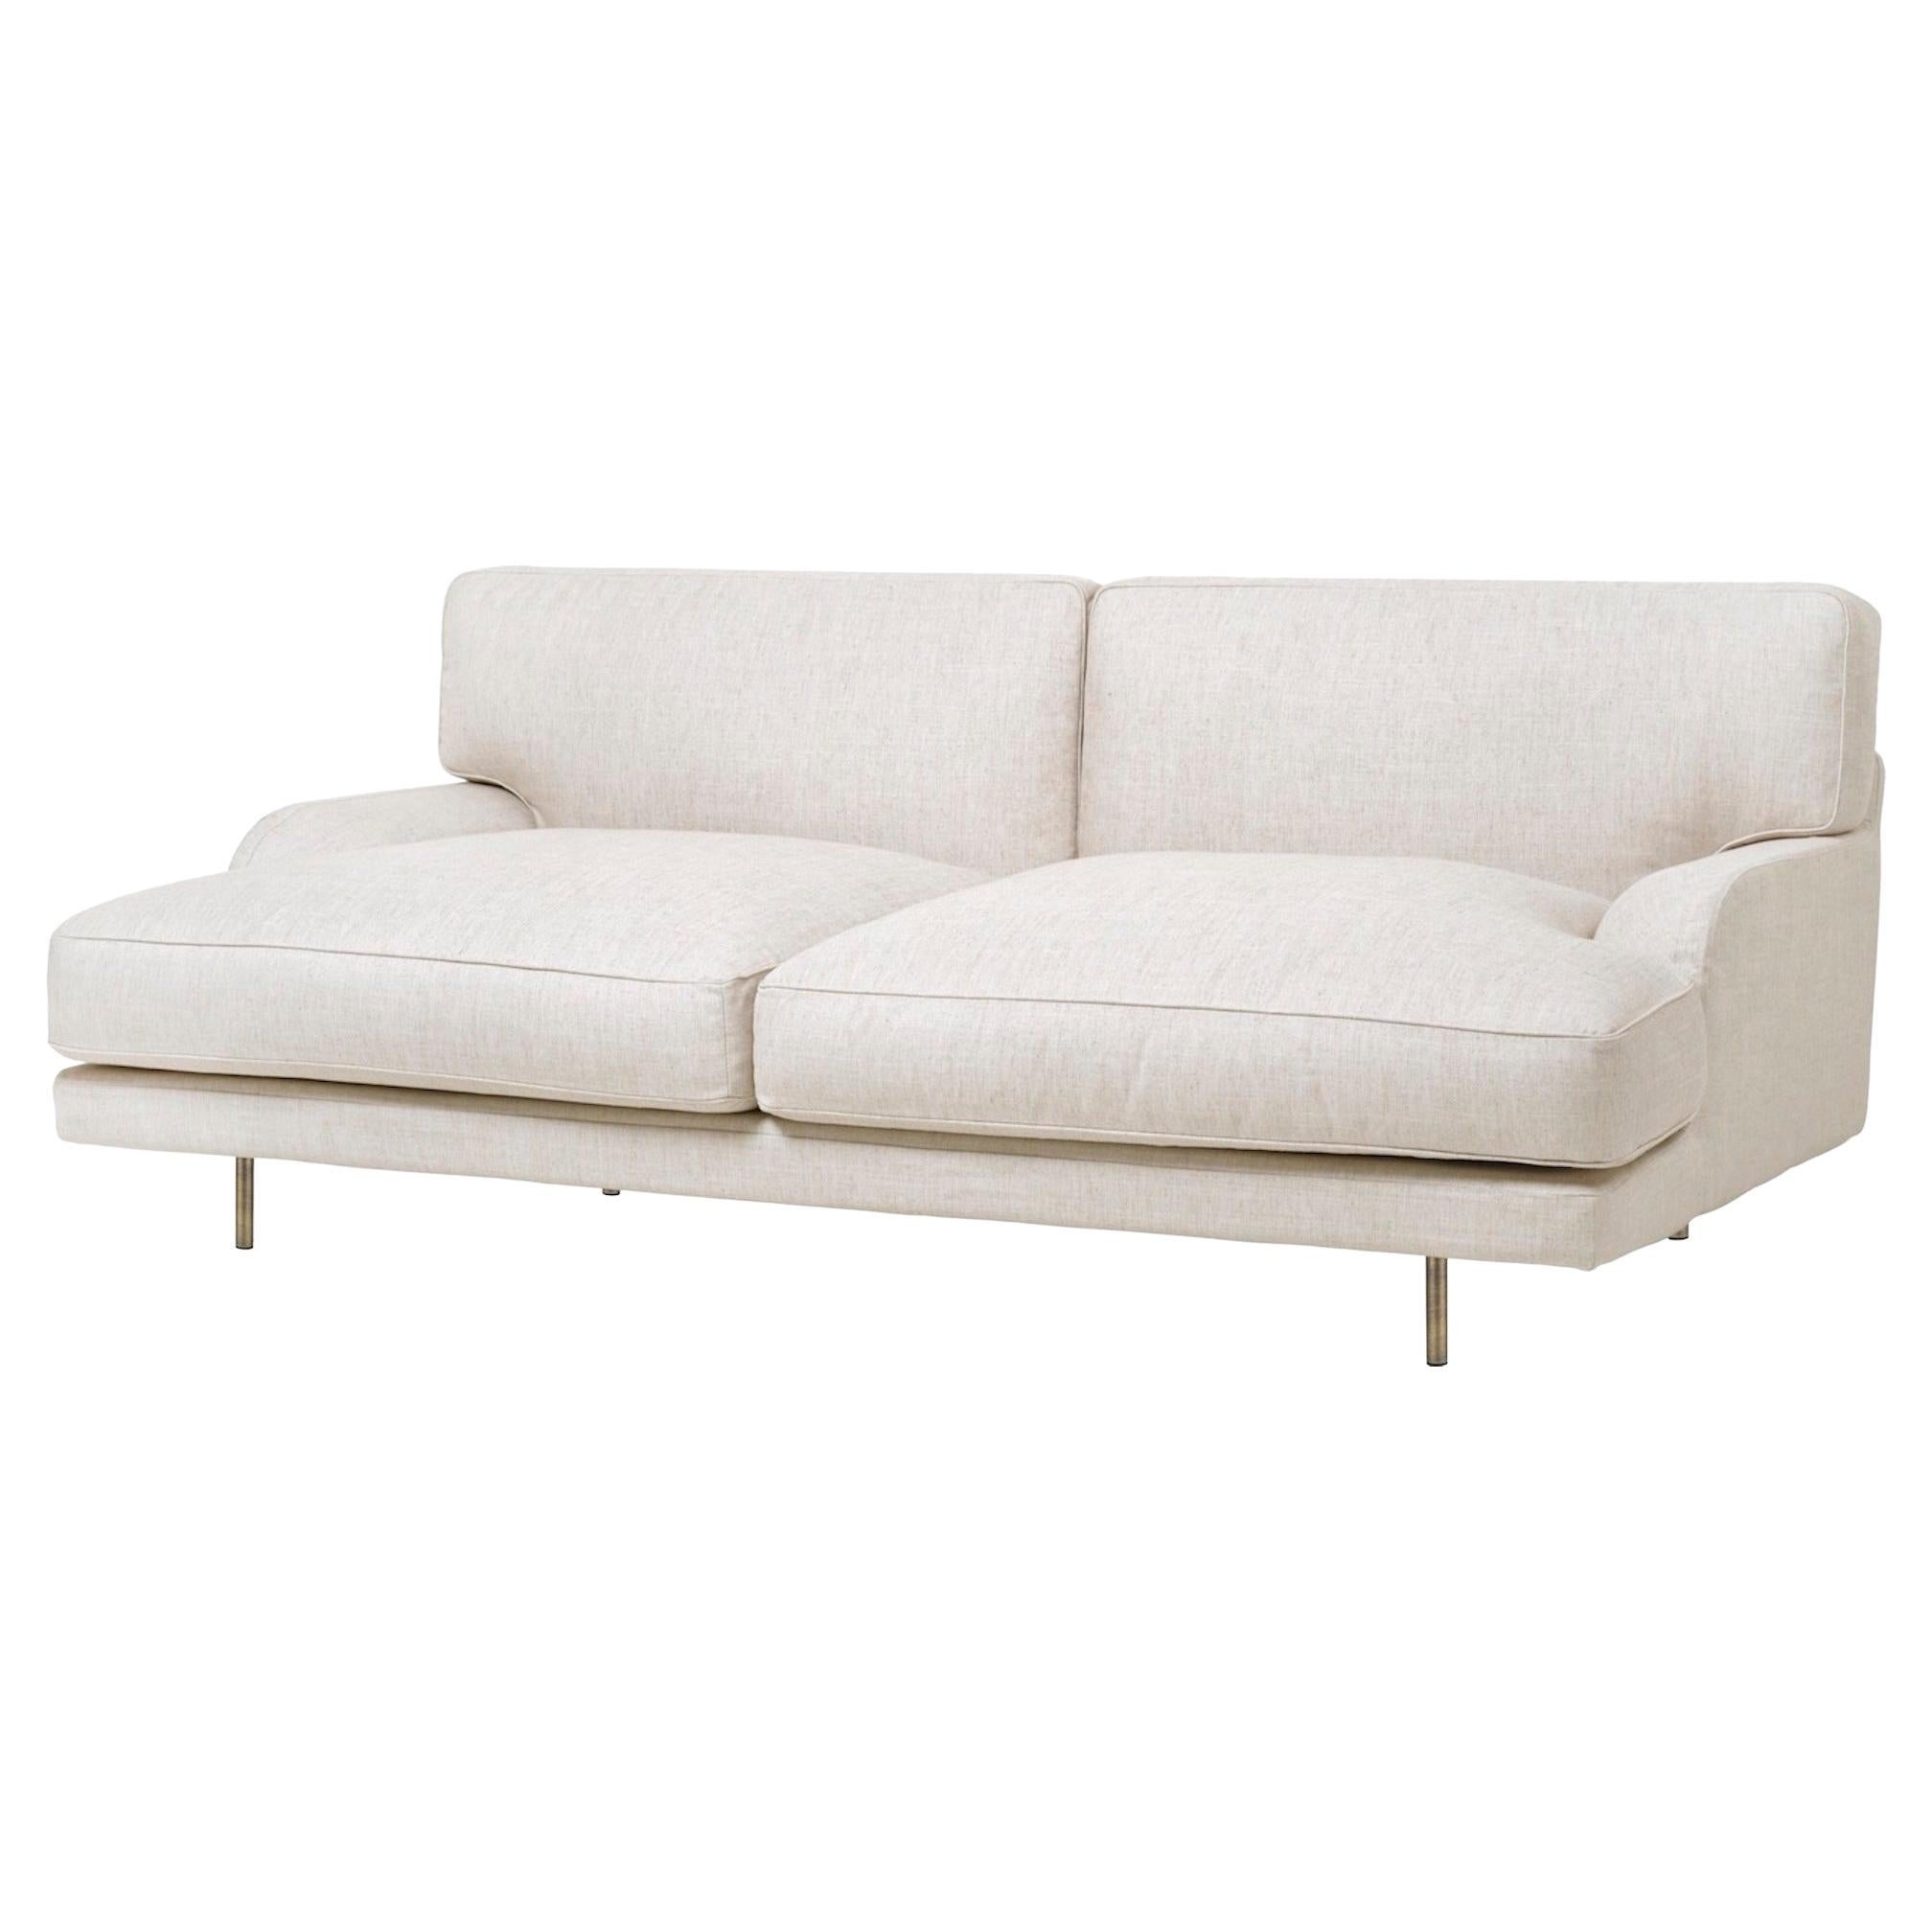 Individuell anpassbares Gubi Flaneur Sofa entworfen von Gamfratesi